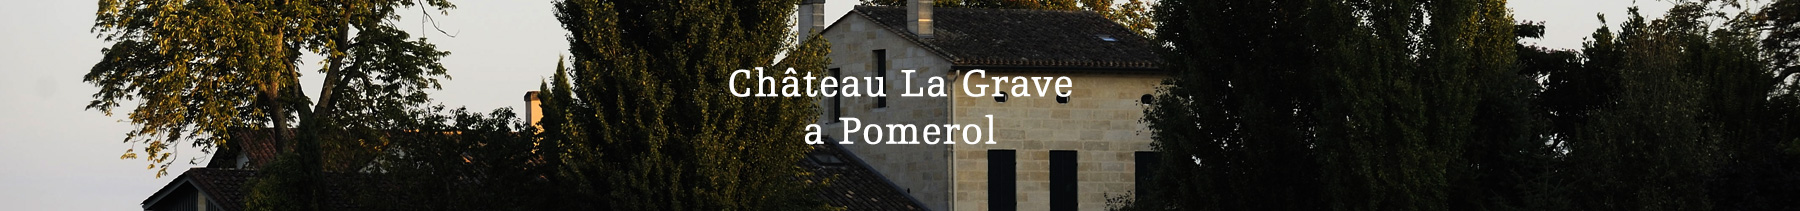 Château La Grave a Pomerol